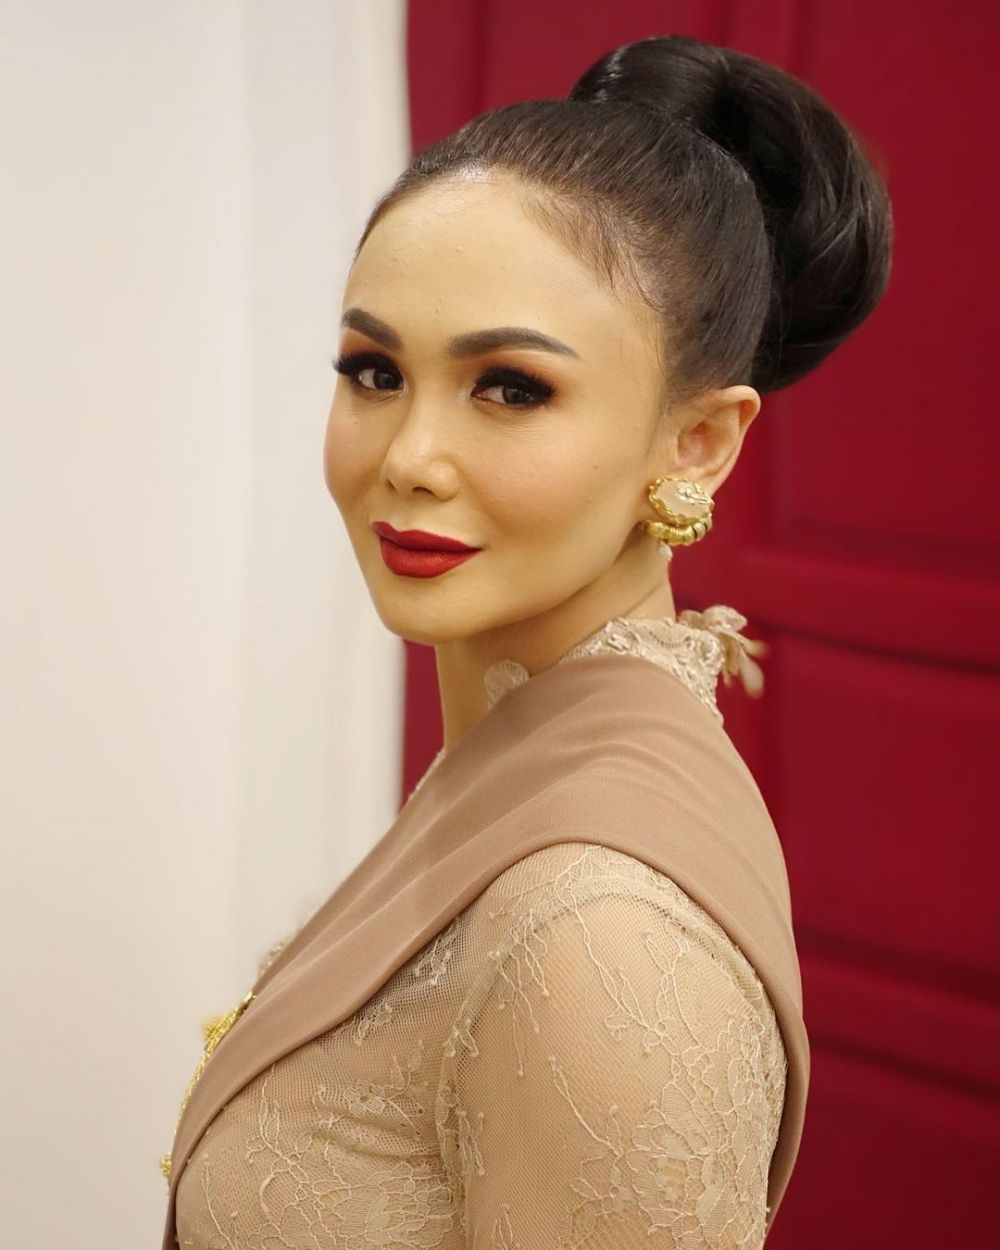 8 Pesona Yuni Shara di acara siraman Aurel, cantik bak barbie Jawa